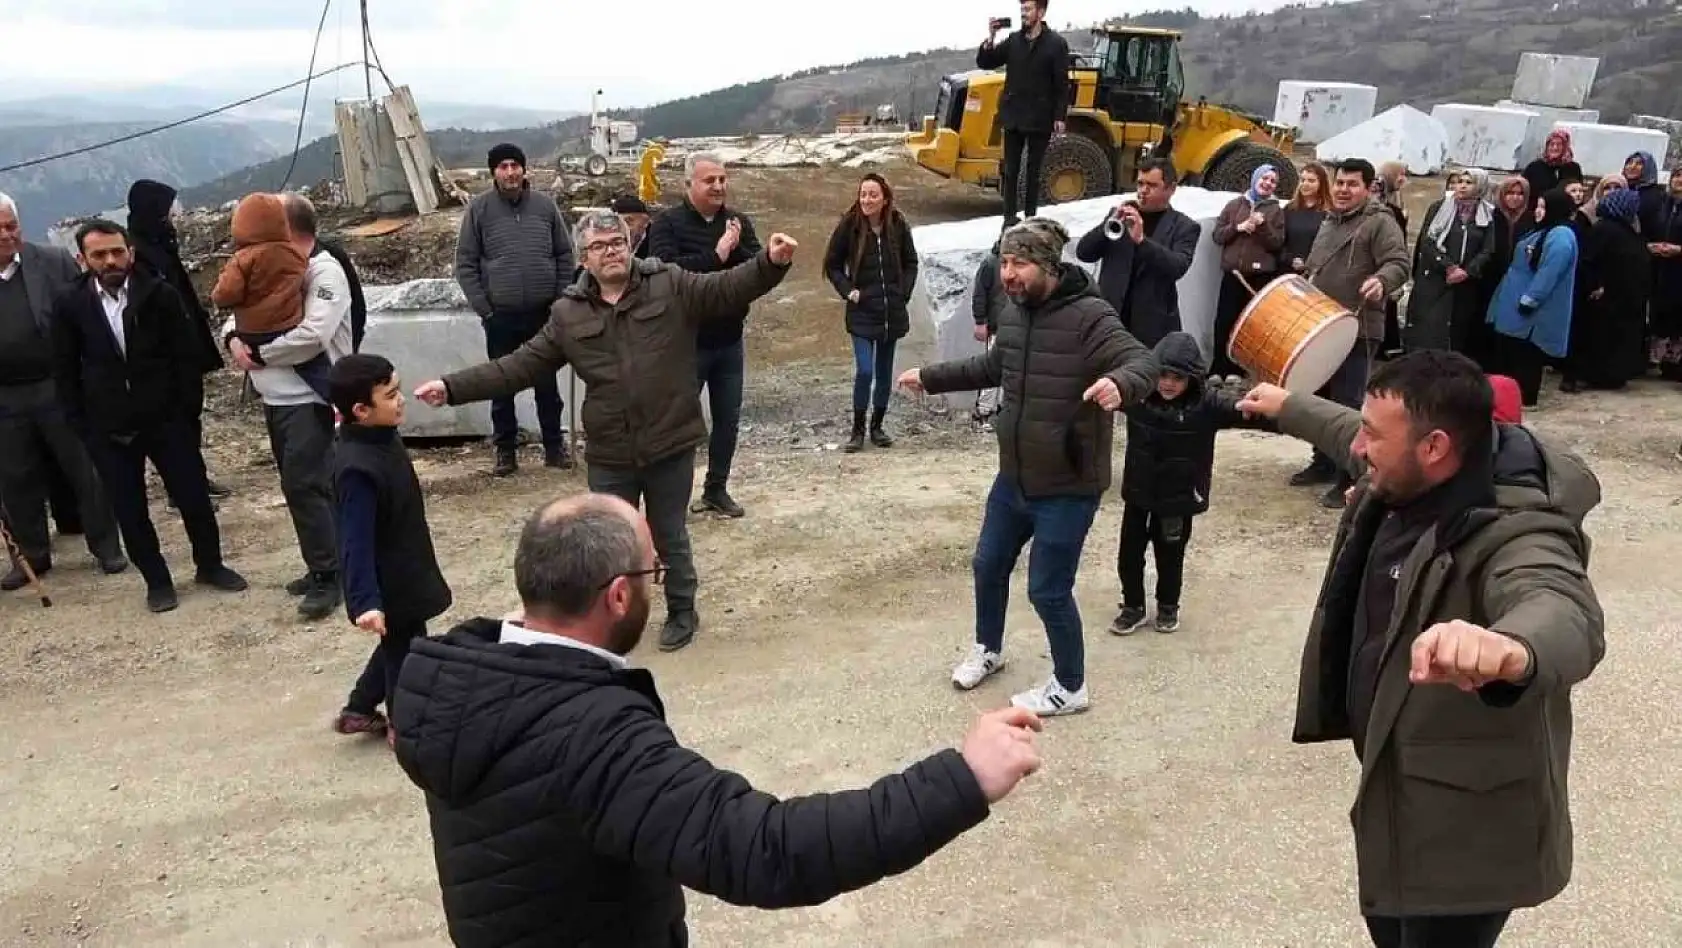 (Özel) Bursa'da mahkemenin mermer ocağı kararını duyan köylüler davul zurnayla yürüdü